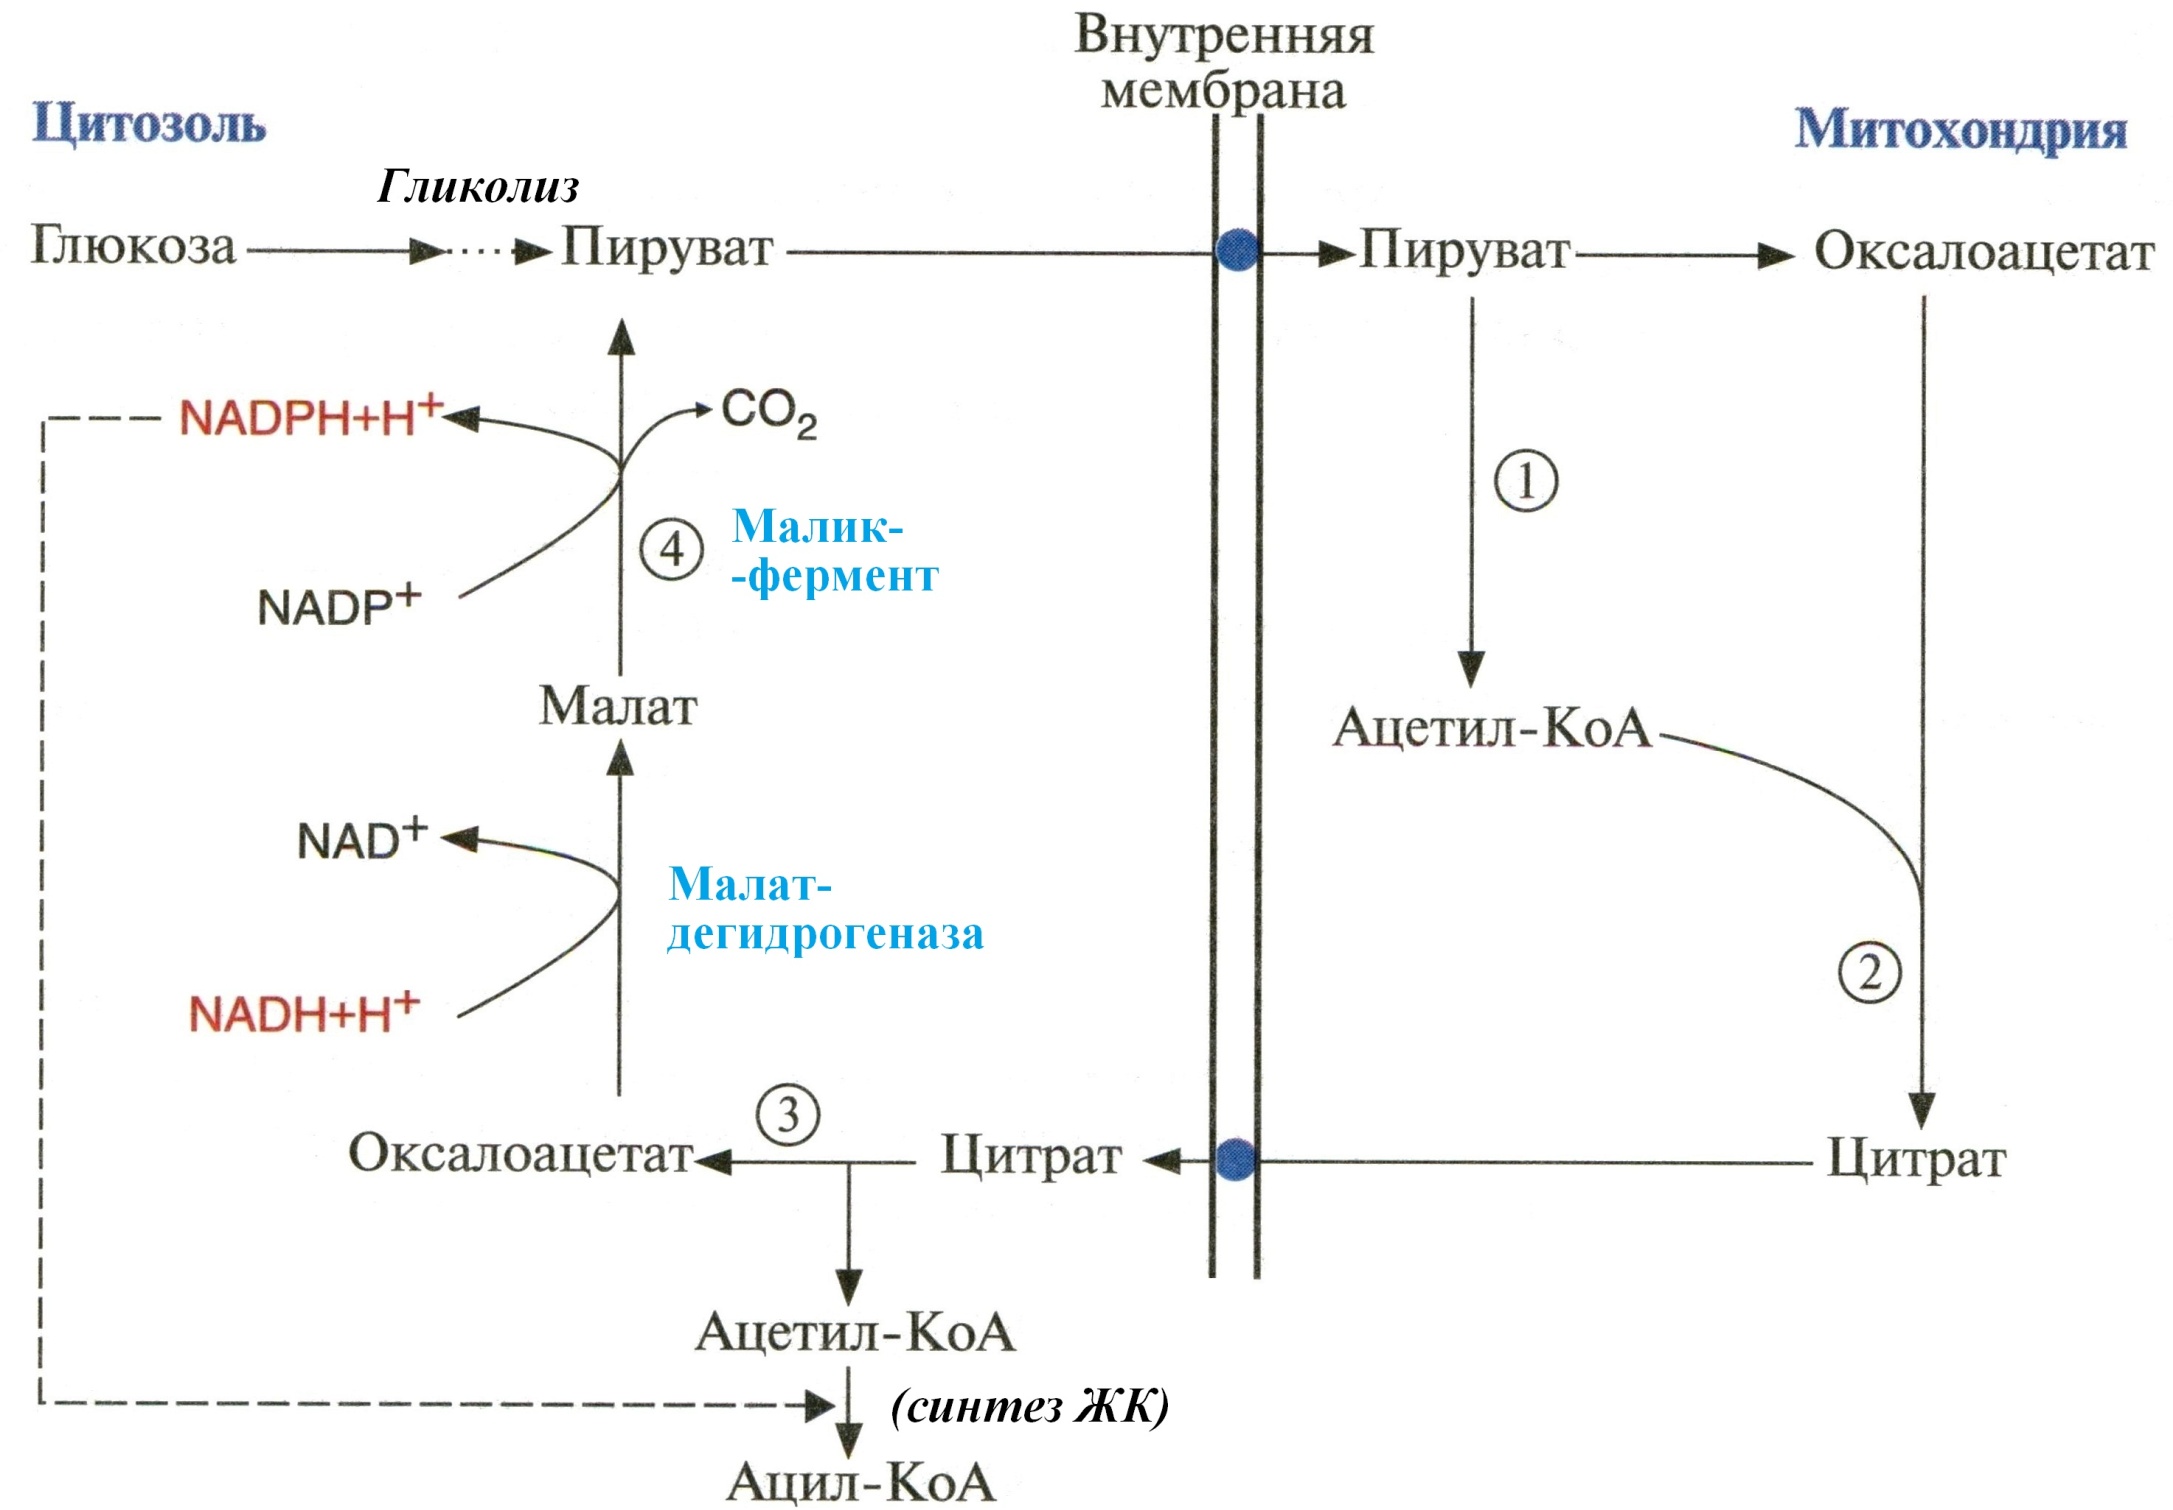 Ацетил коа в митохондриях. Малат в пируват. Малик фермент Синтез жирных кислот. Перенос ацетильных остатков из митохондрий в цитозоль. Схема переноса ацетильных остатков из митохондрий в цитозоль.